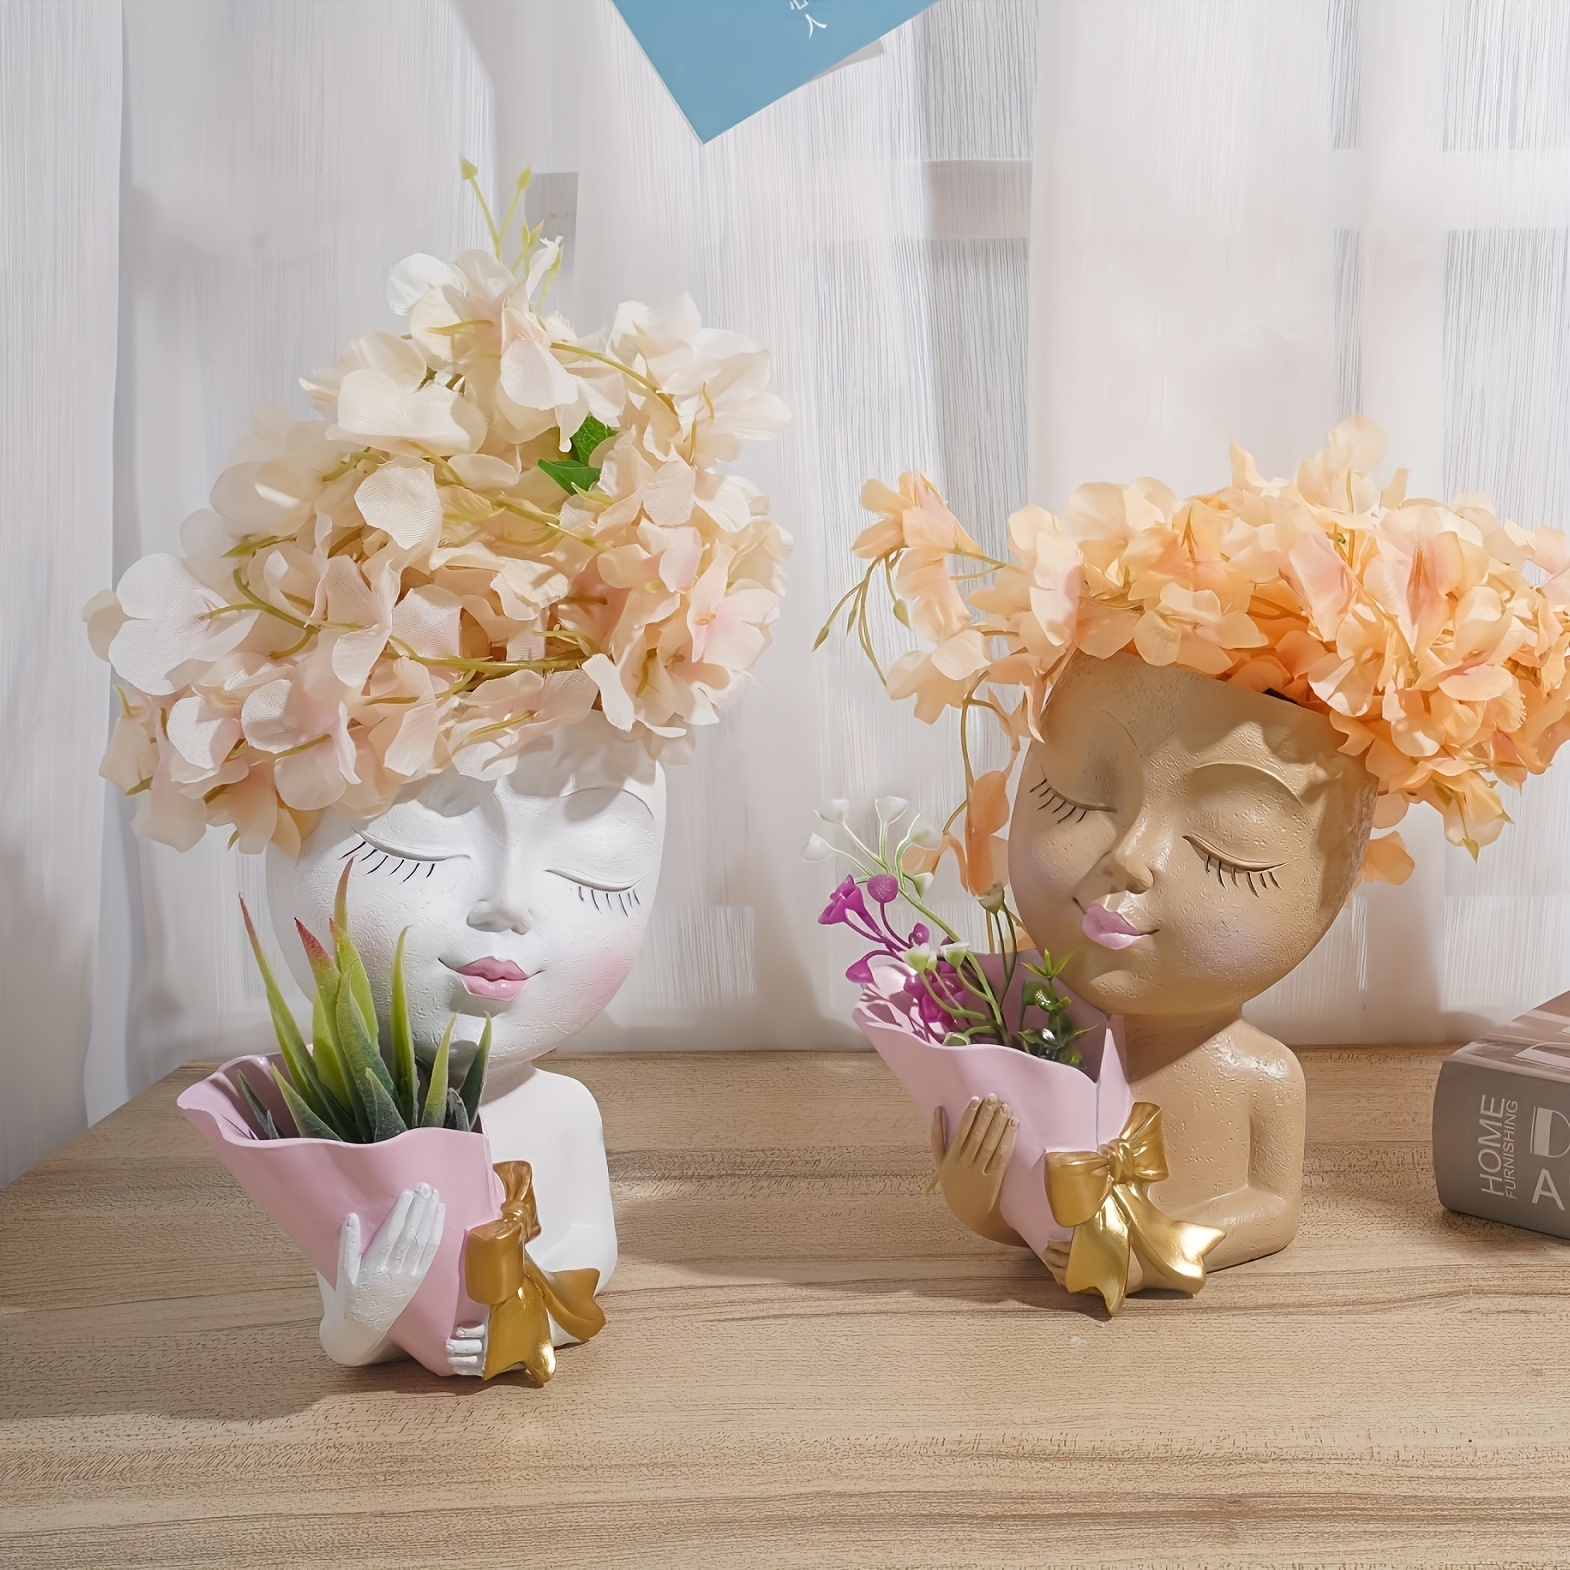 1 Stück Dekorative Vase Aus Home-Office-Wohnzimmer-Dekor-Blumentopf - Gesichtsvase, Mit Kunstharz, Temu Kreative Drainage-Blumentopf, Germany